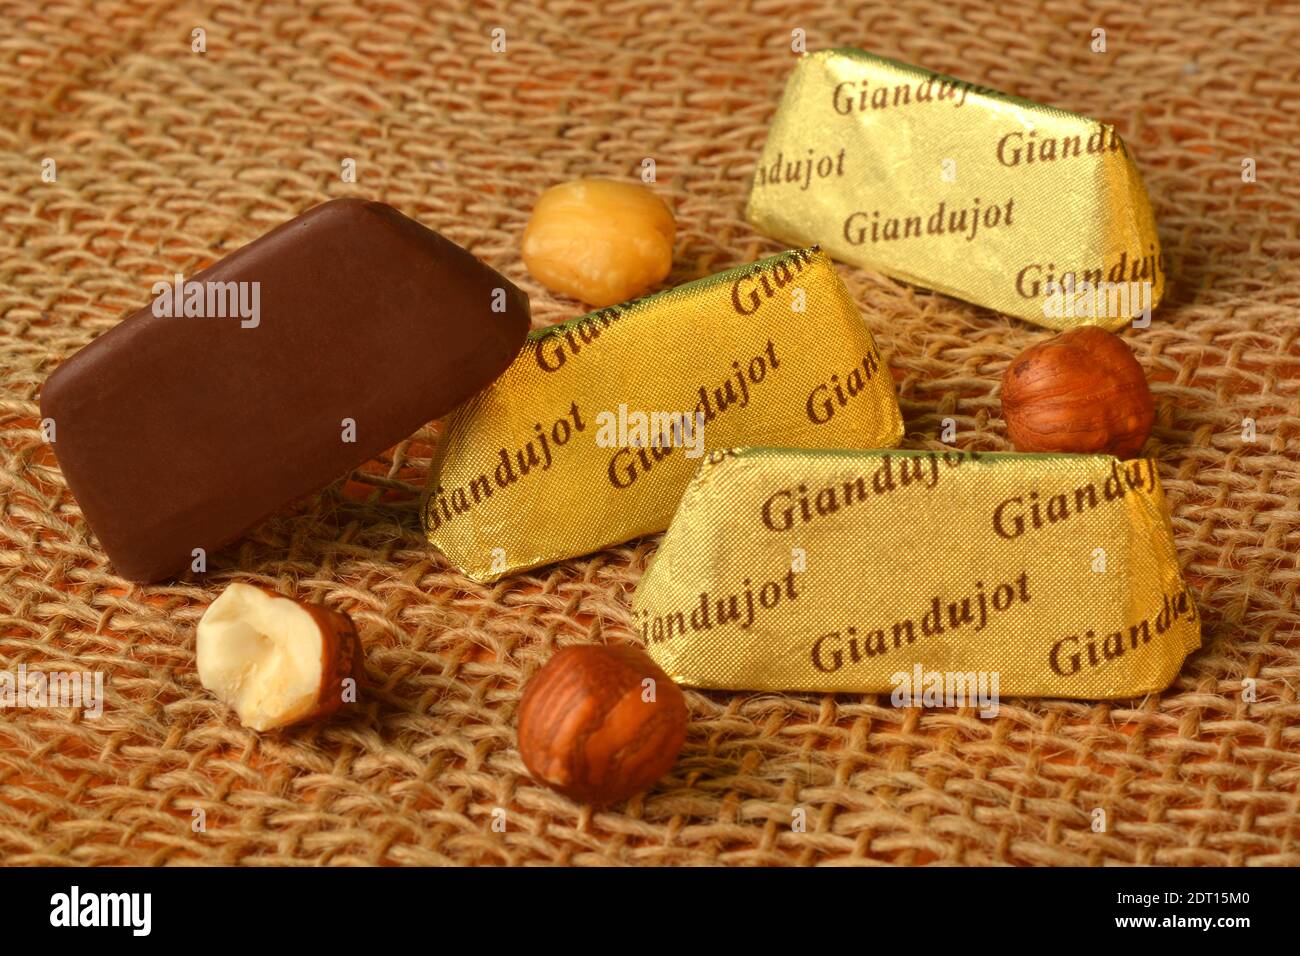 Produit alimentaire italien, le Gianduiotto Piémont traditionnel avec chocolat noisette. Banque D'Images